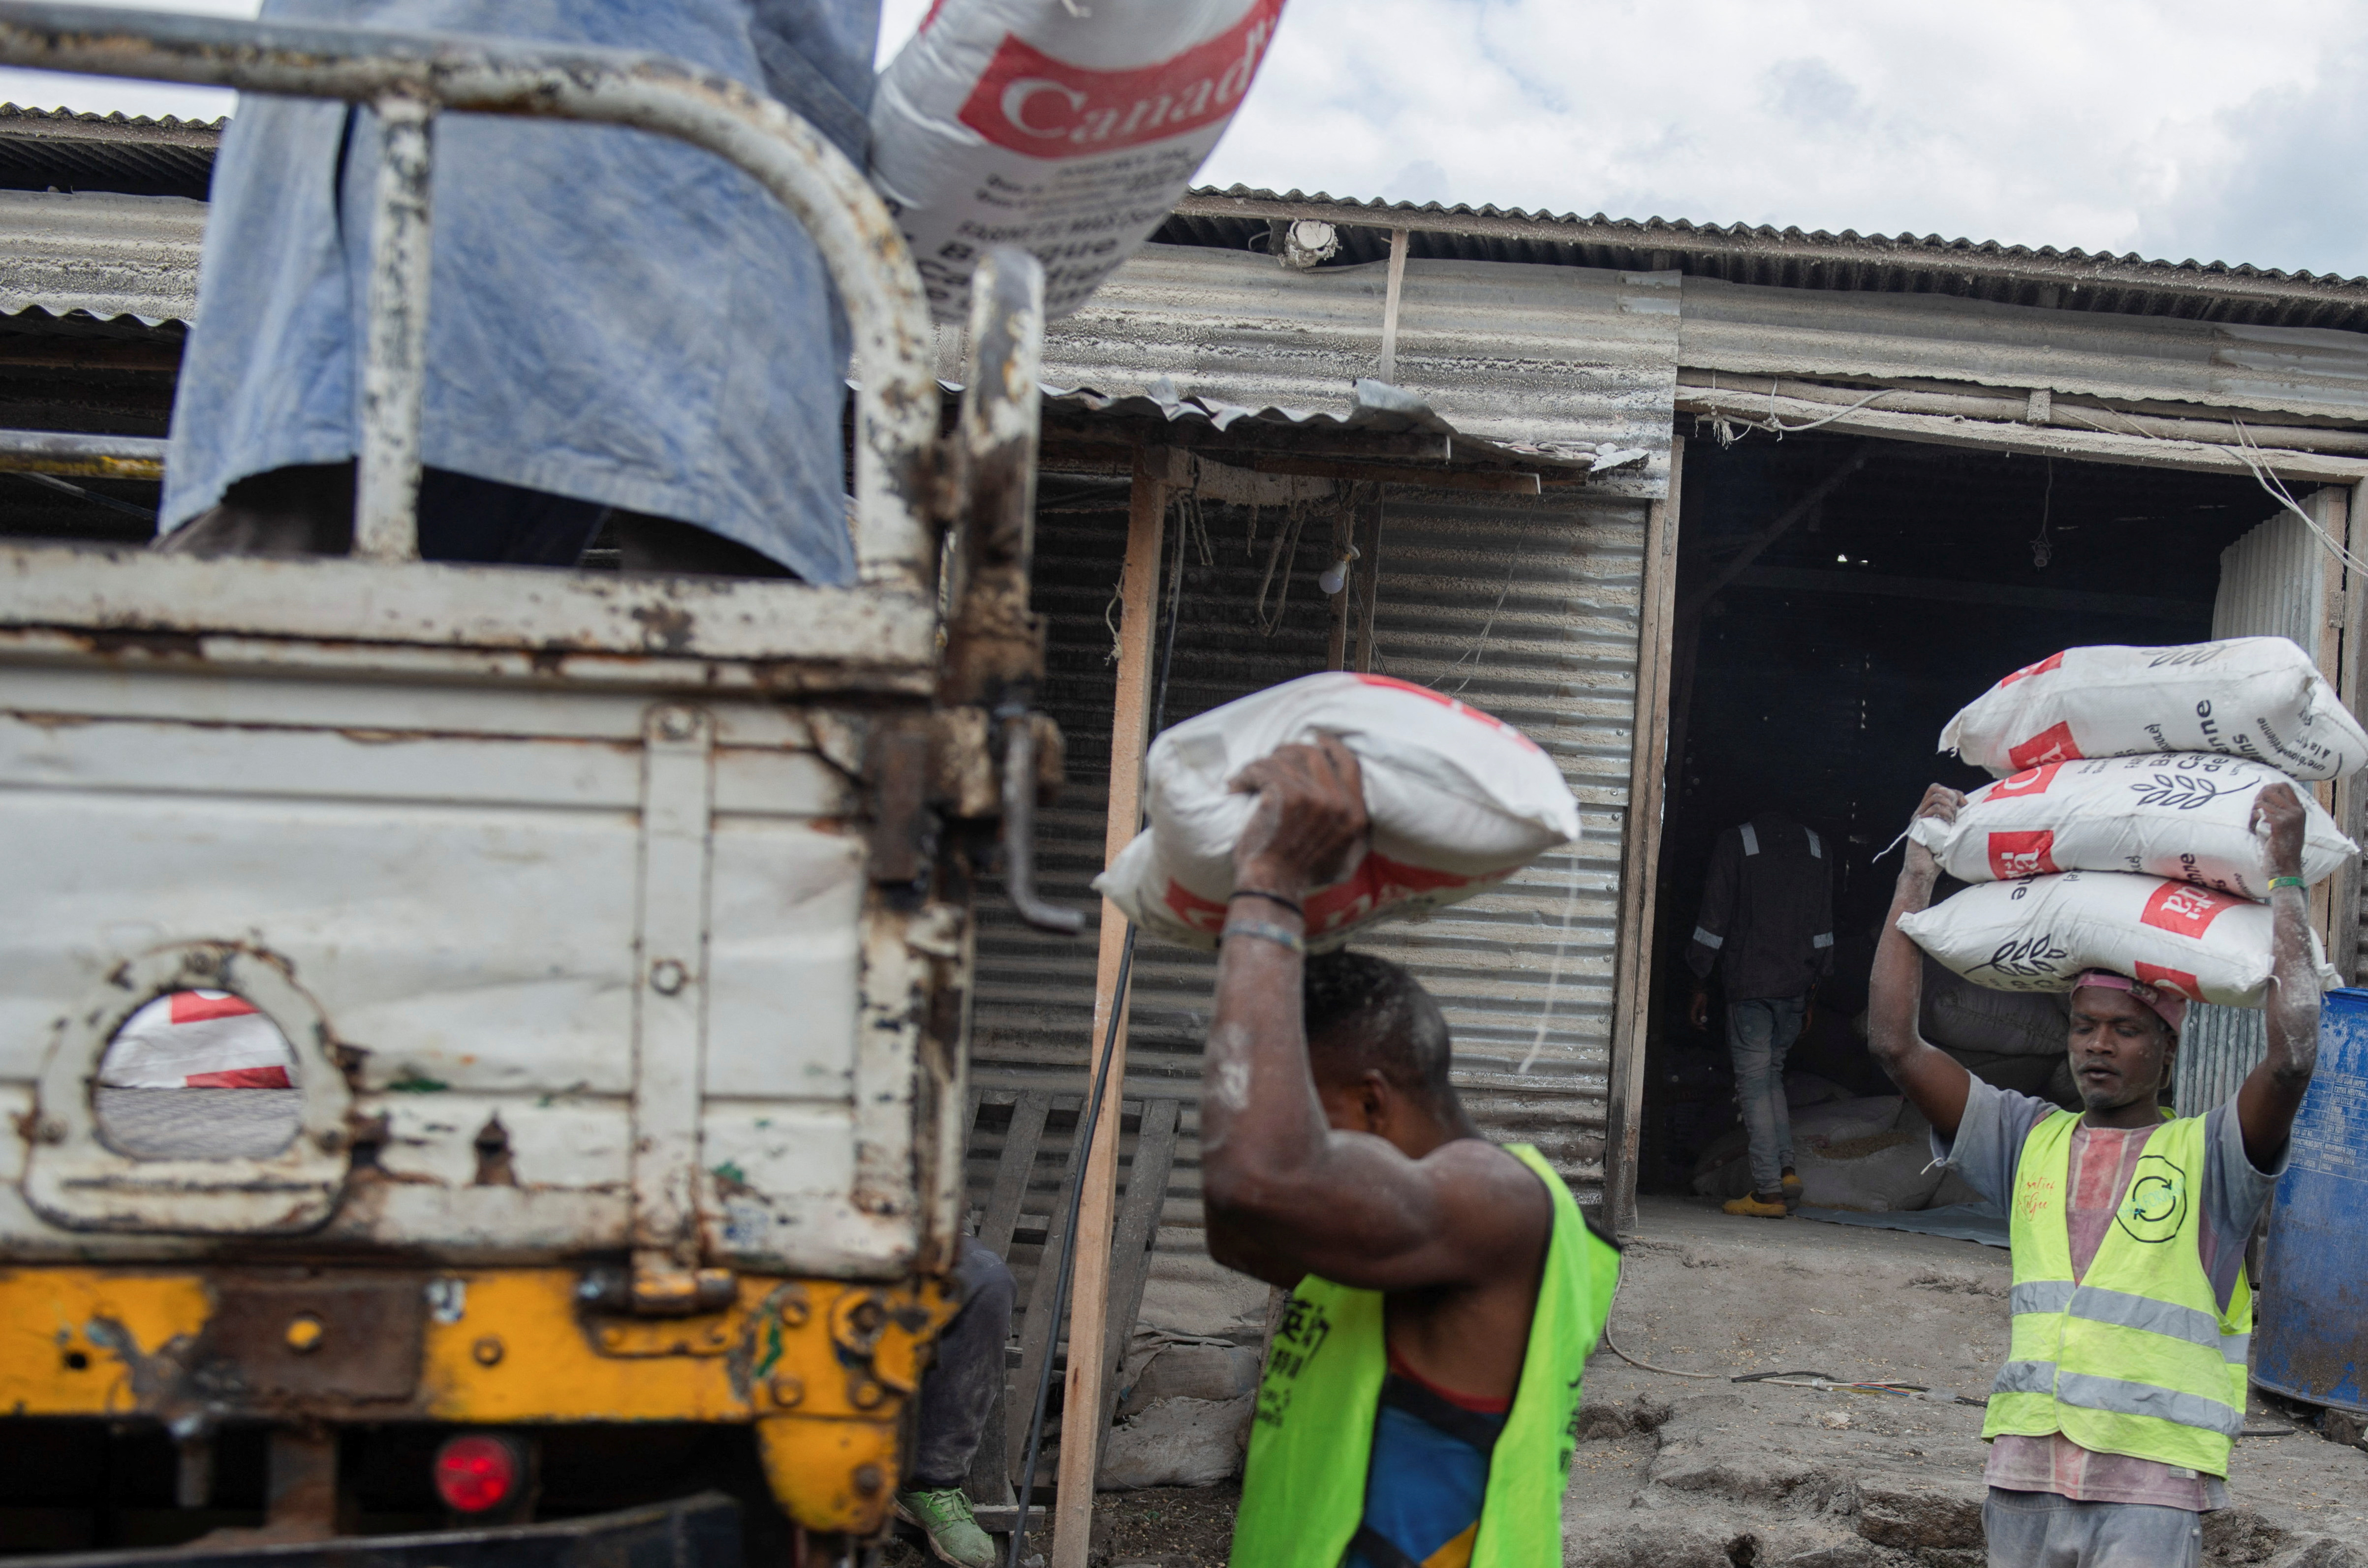 Maíz escondido en ataúdes: la estrategia con la que contrabandistas se aprovechan de la escasez en el Congo